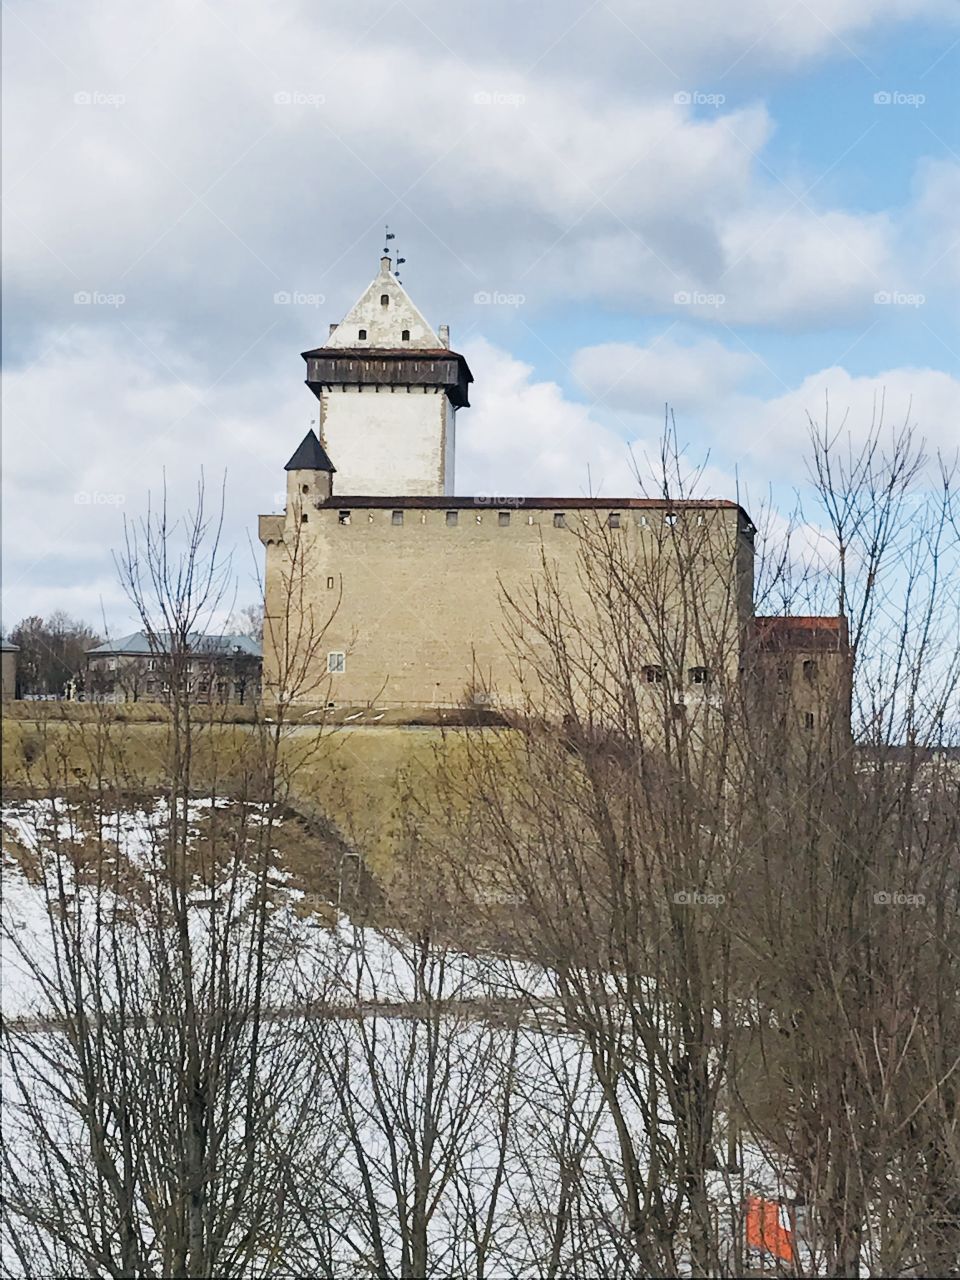 Narva, Нарвский замок / замок Герман (эст. Hermanni linnus) — средневековый замок в эстонском городе Нарва на берегу реки Нарва (Нарова), основанный датчанами в XIII веке. 🇪🇪